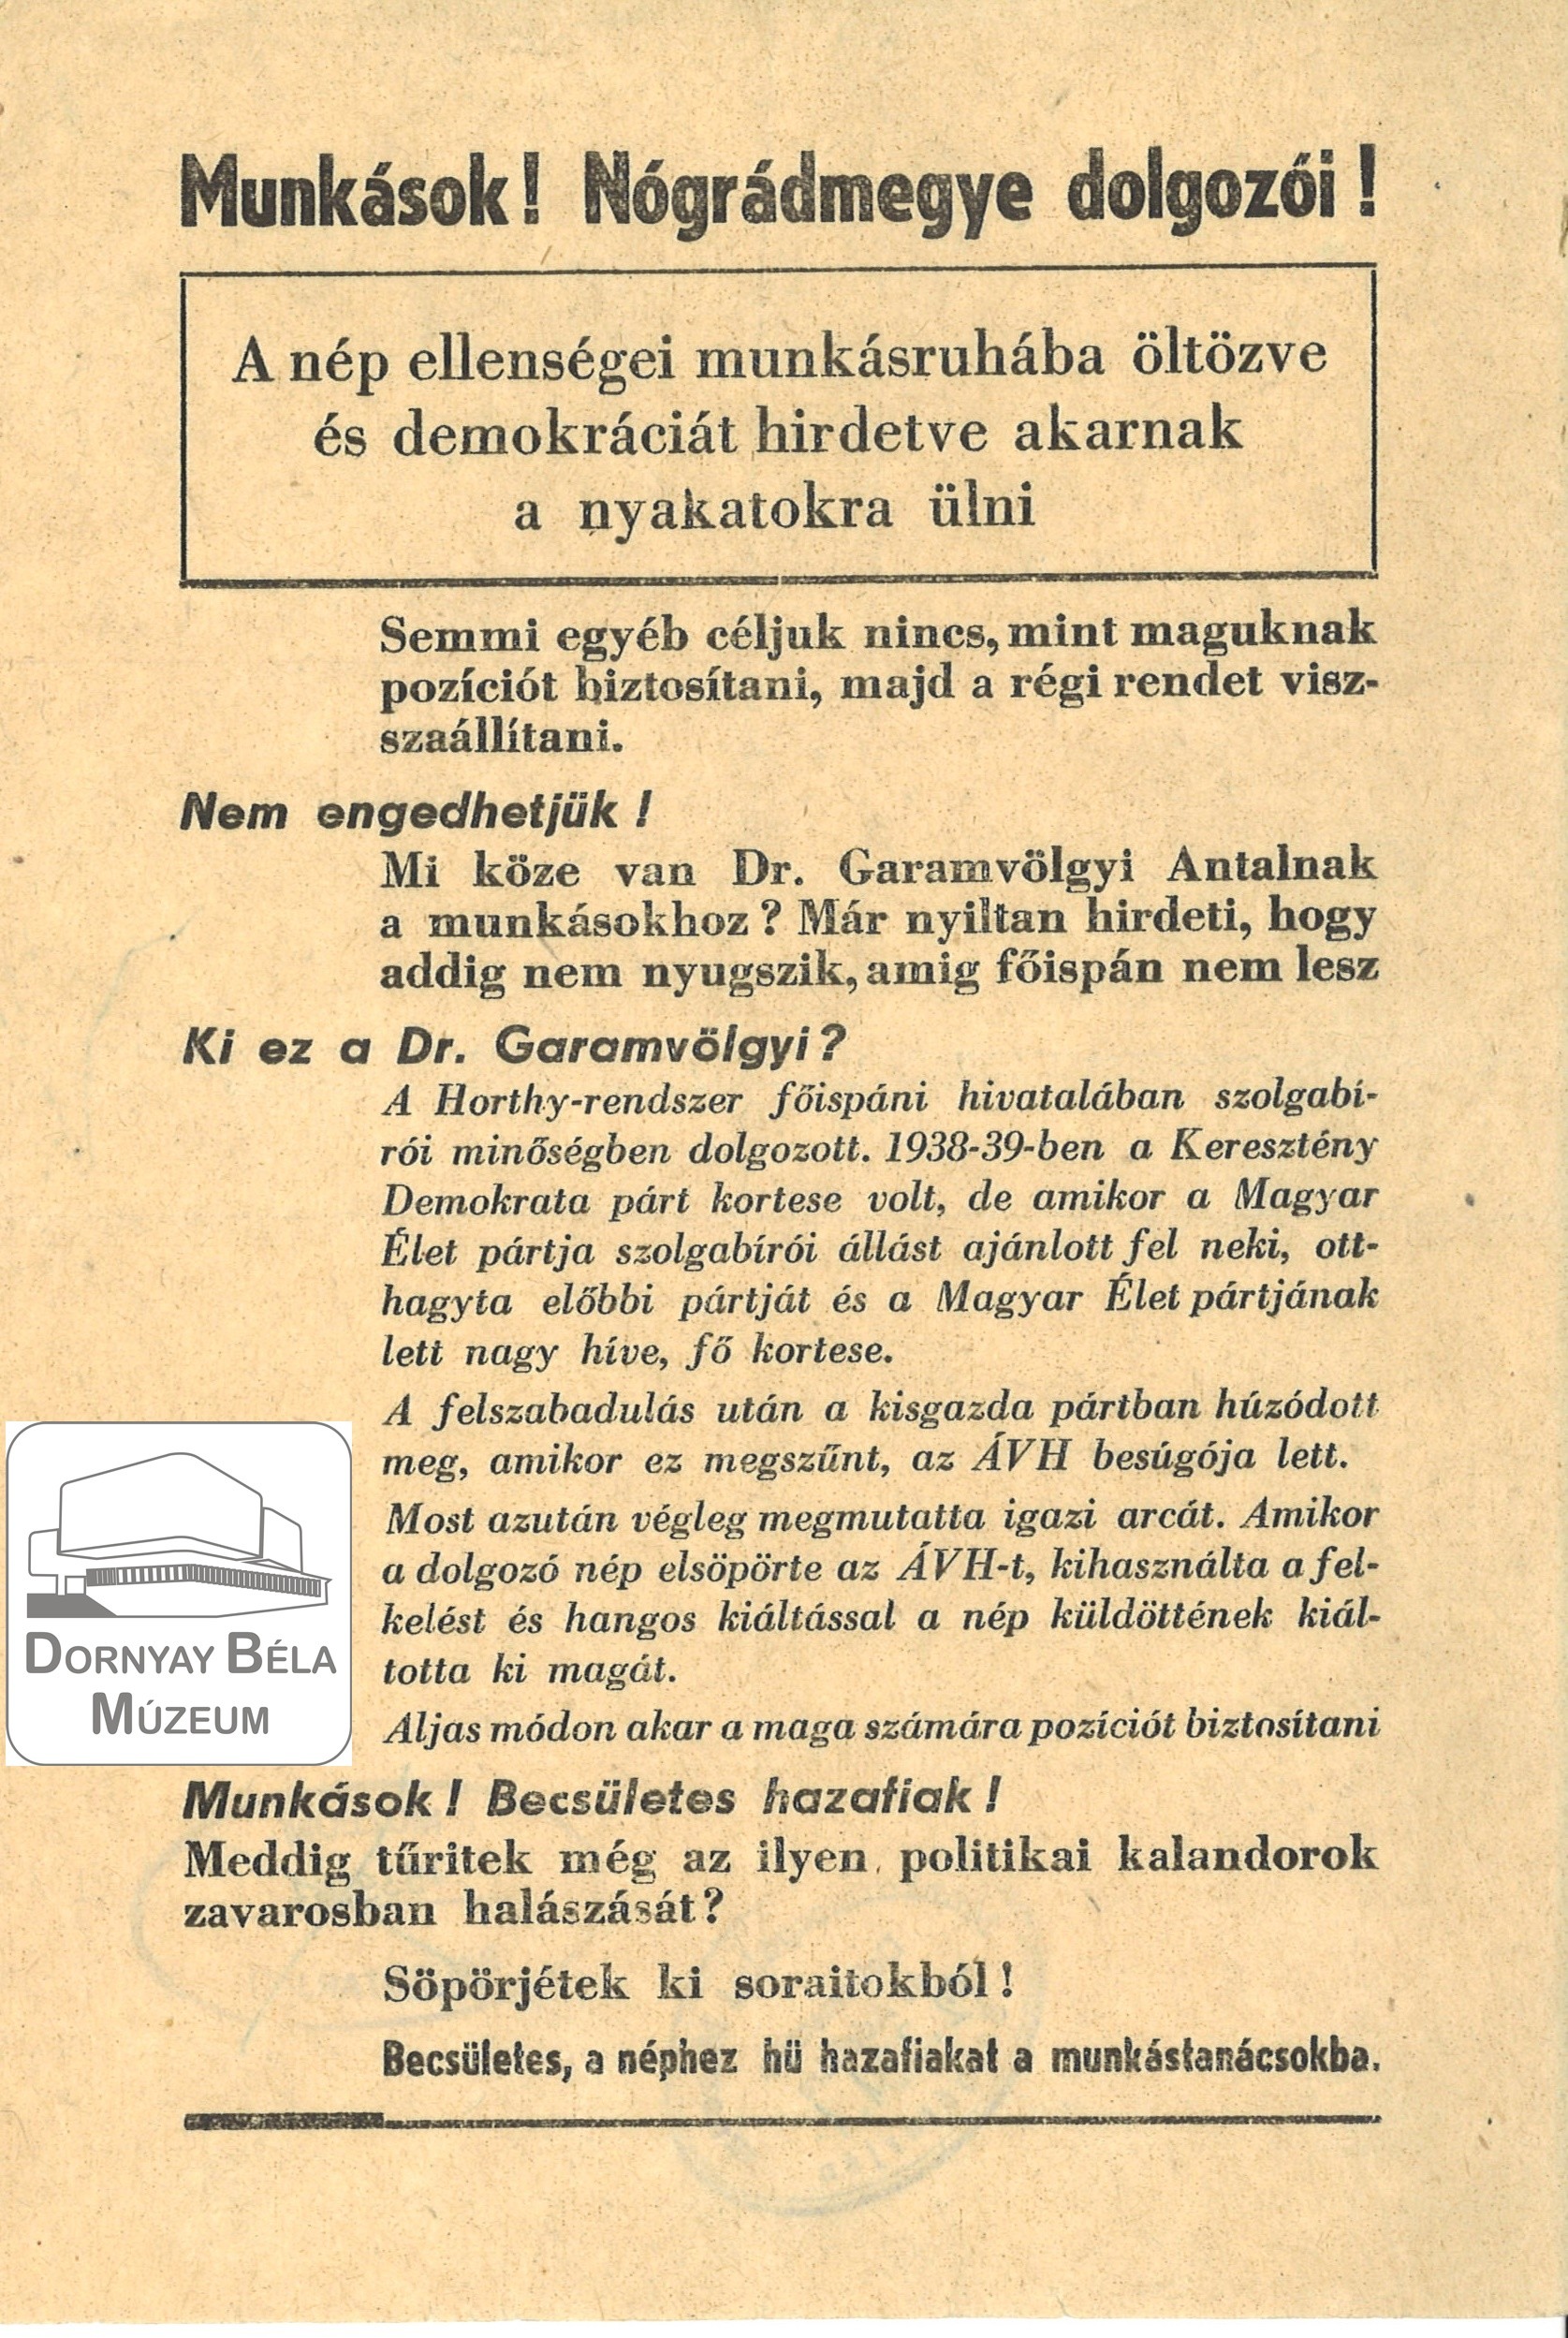 Felhívás a munkásokhoz, Nógrád megye dolgozóihoz. (Forradalmi) (Dornyay Béla Múzeum, Salgótarján CC BY-NC-SA)